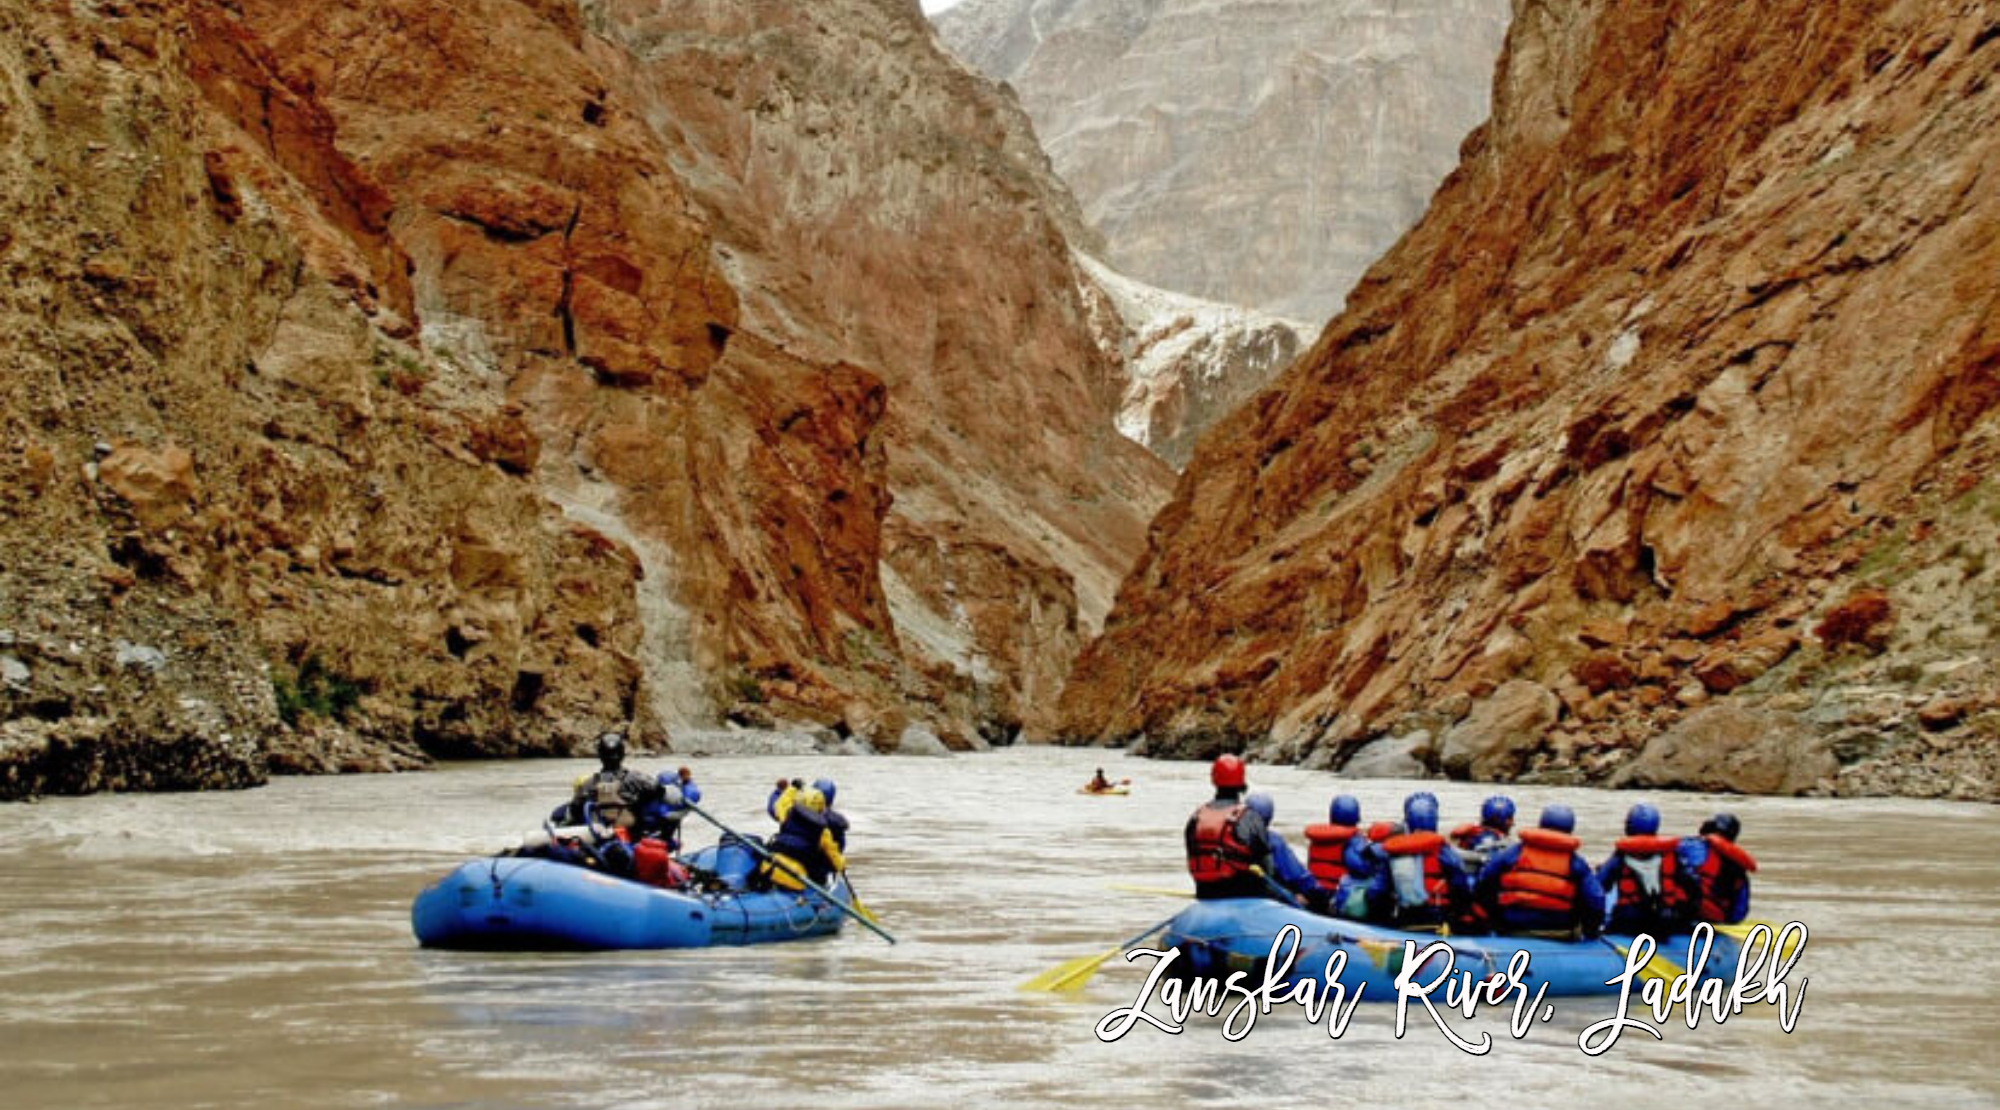 zanskar river ladakh, river rafting in india, jodhpur cabs